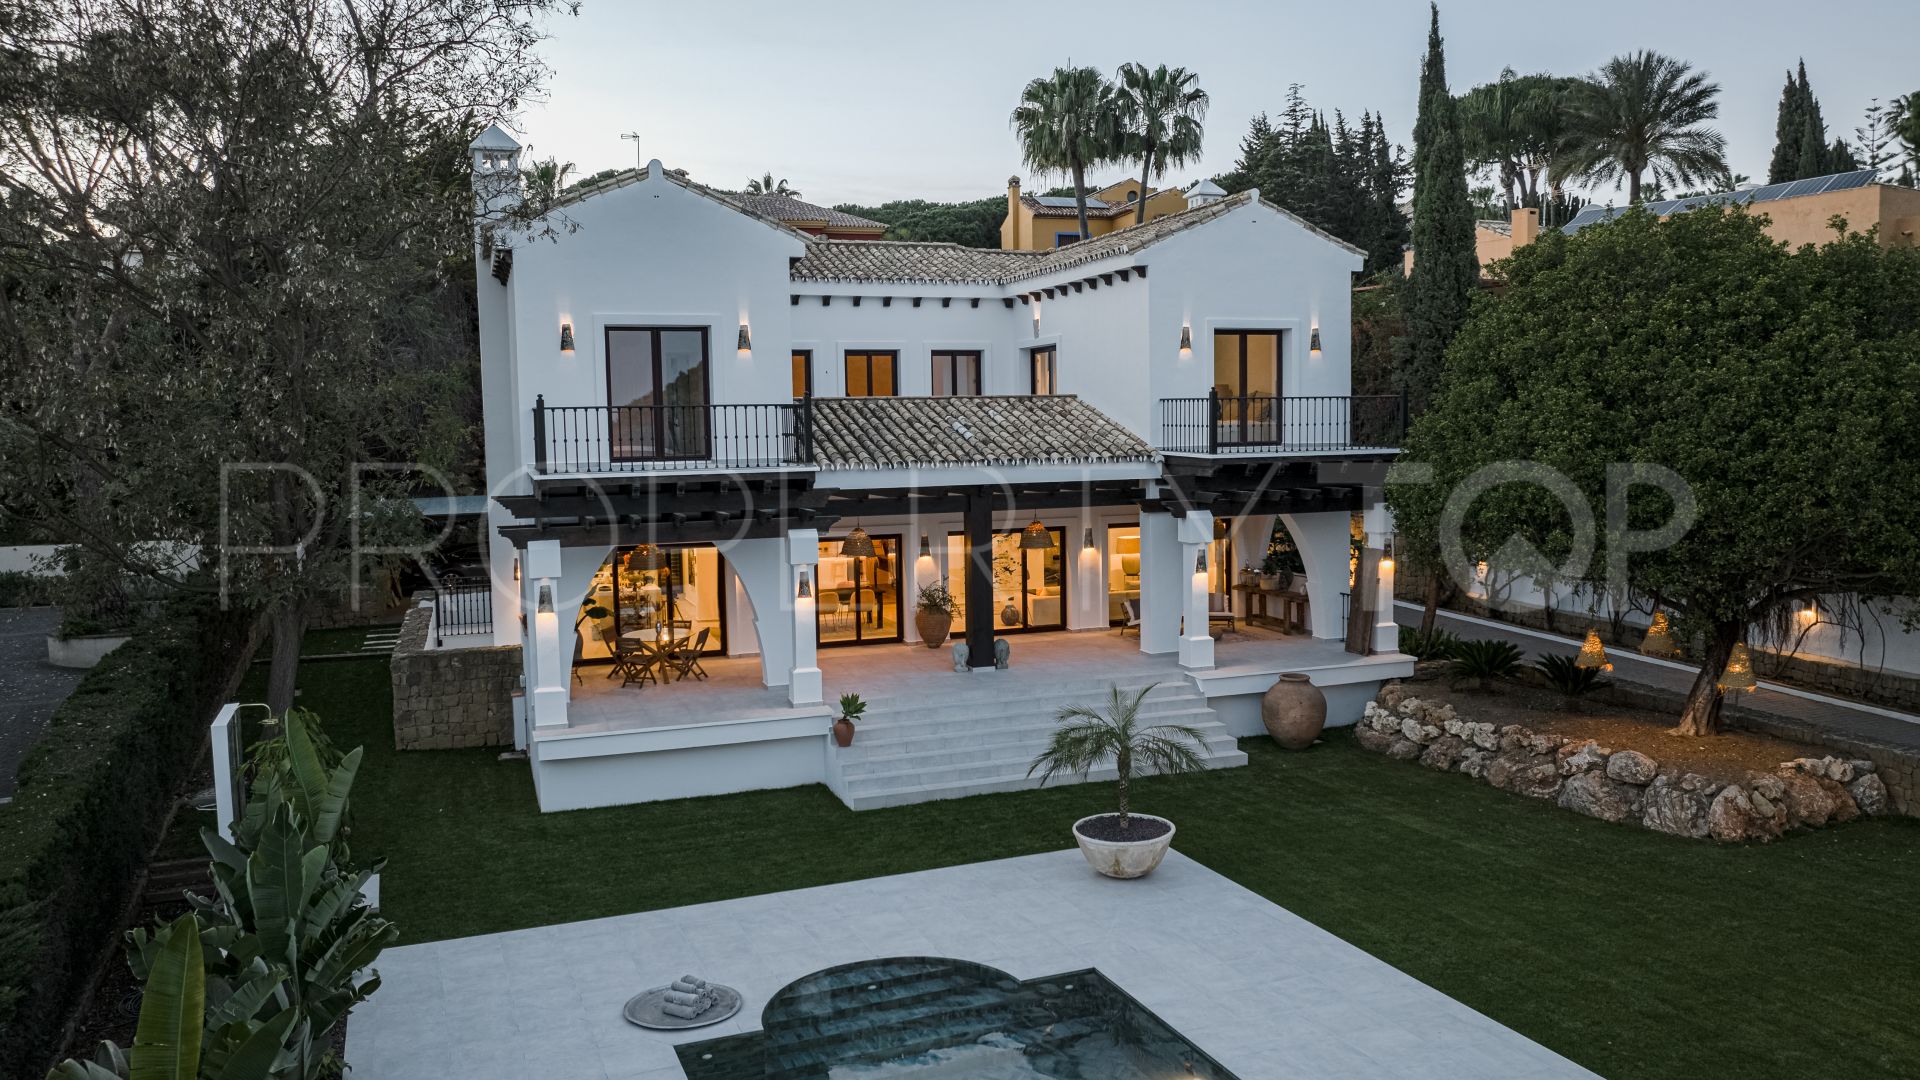 5 bedrooms villa in Las Chapas for sale